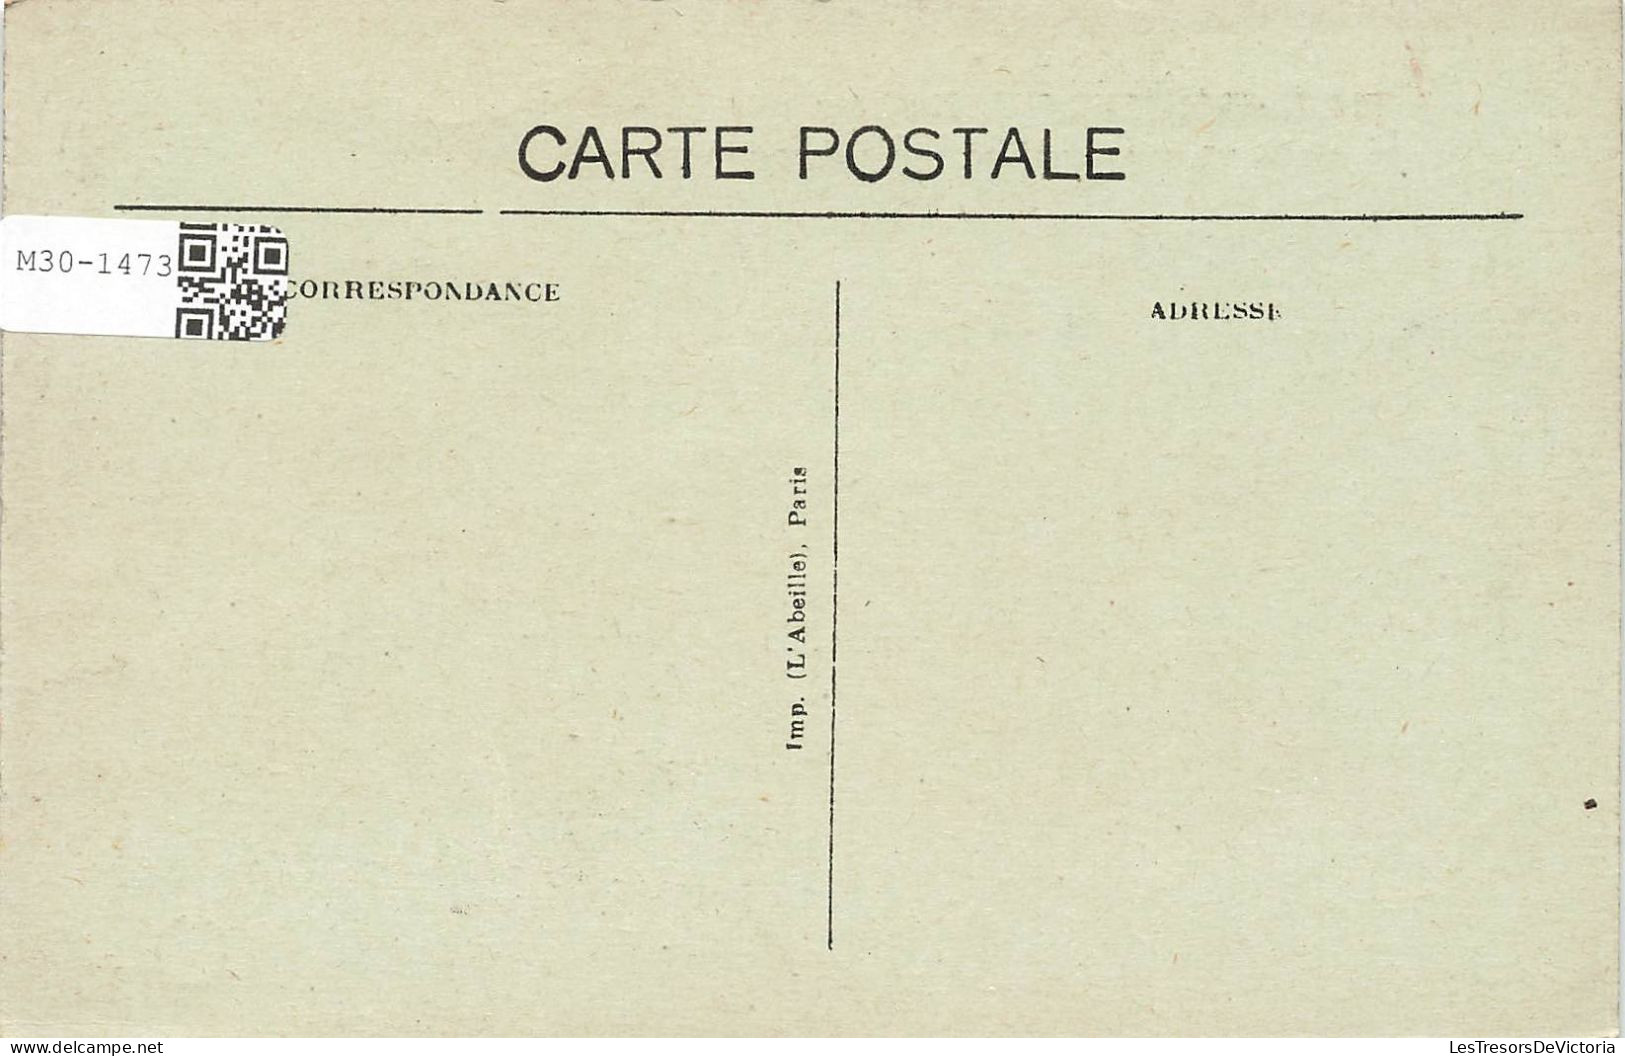 FRANCE - Suresnes - Puteaux - Bords De Seine - Le Barrage - Pont Et Les Coteaux De Saint Cloud - Carte Postale Ancienne - Puteaux